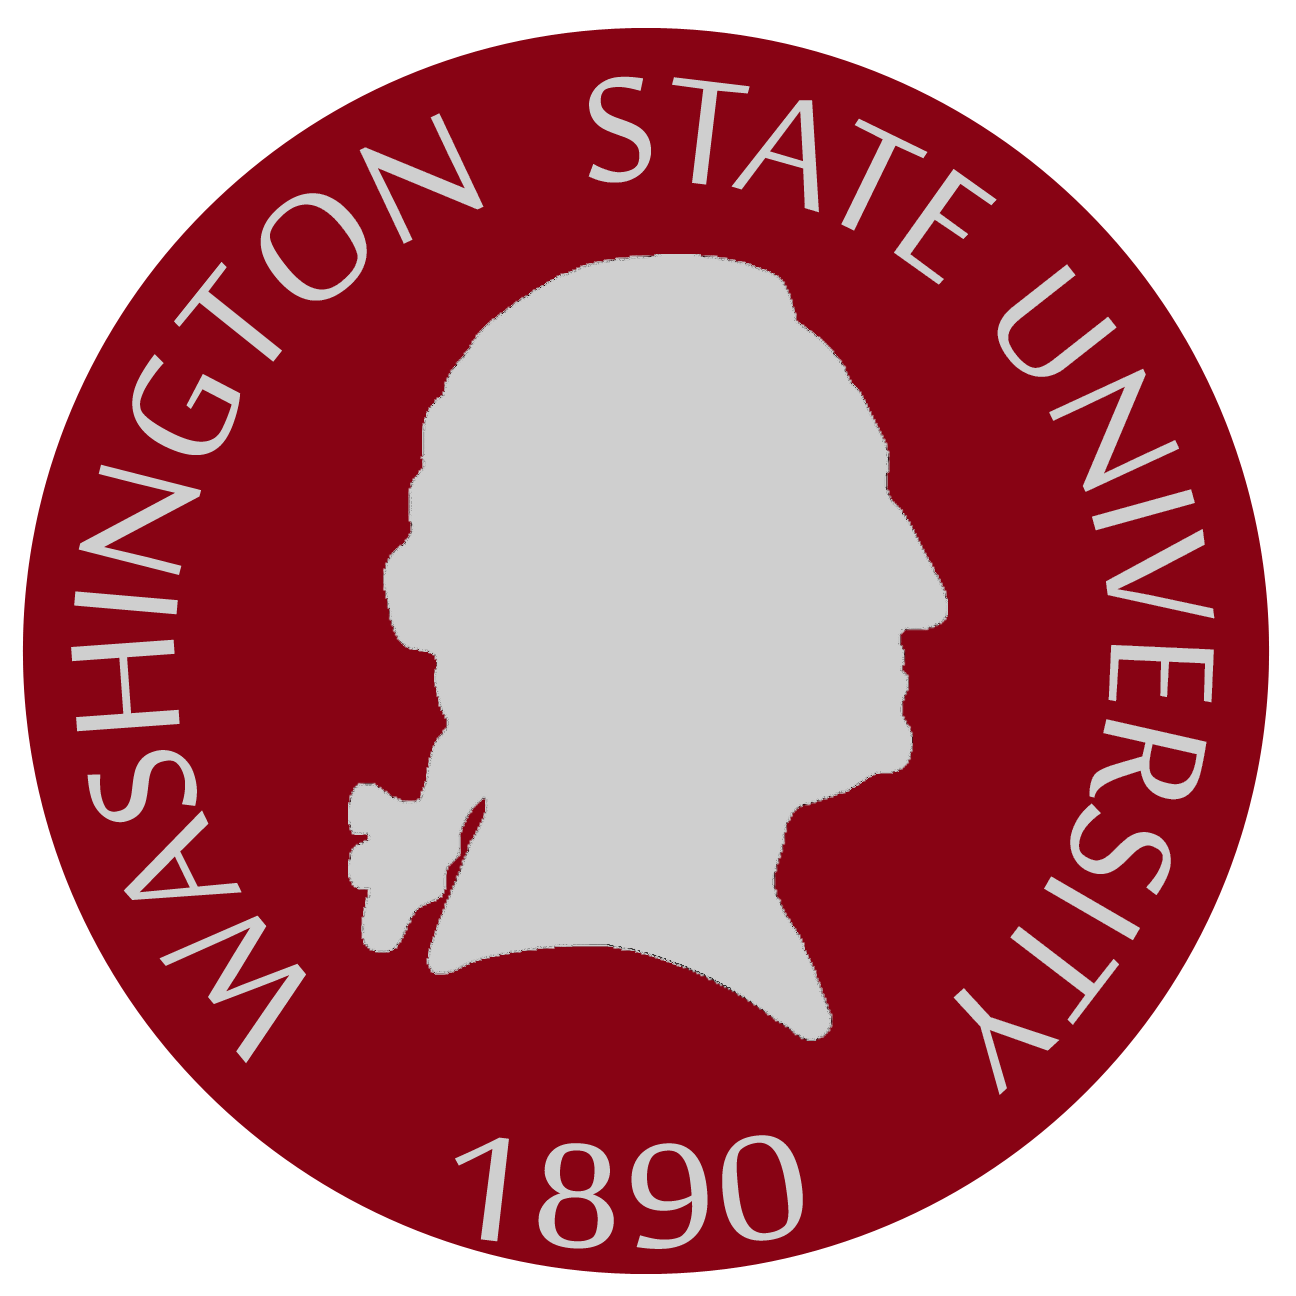 Washington State New Logo - Washington State University Logo #2 - Washington AG Network